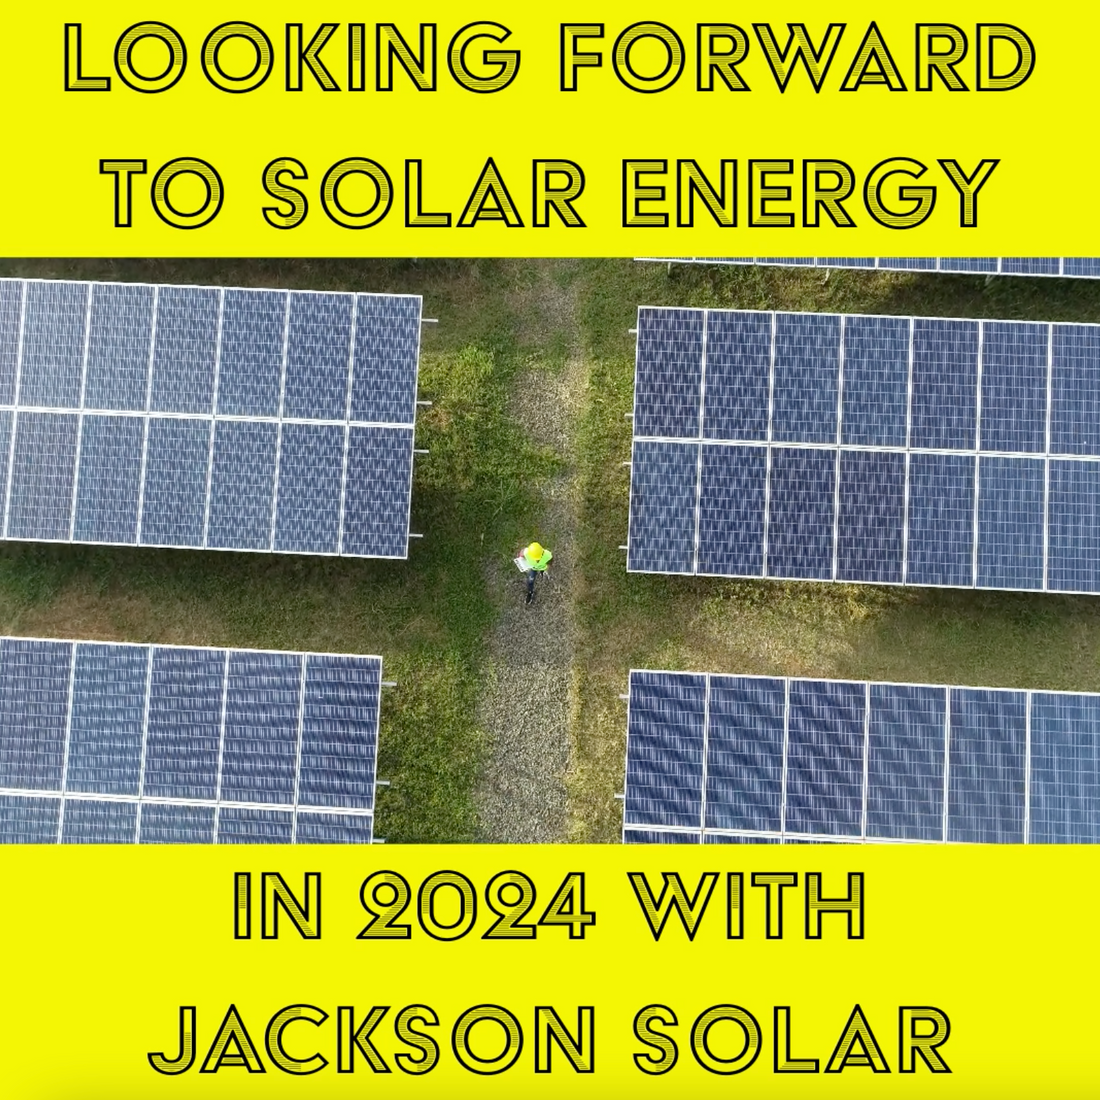 Go Solar in 2024 with Jackson Solar!